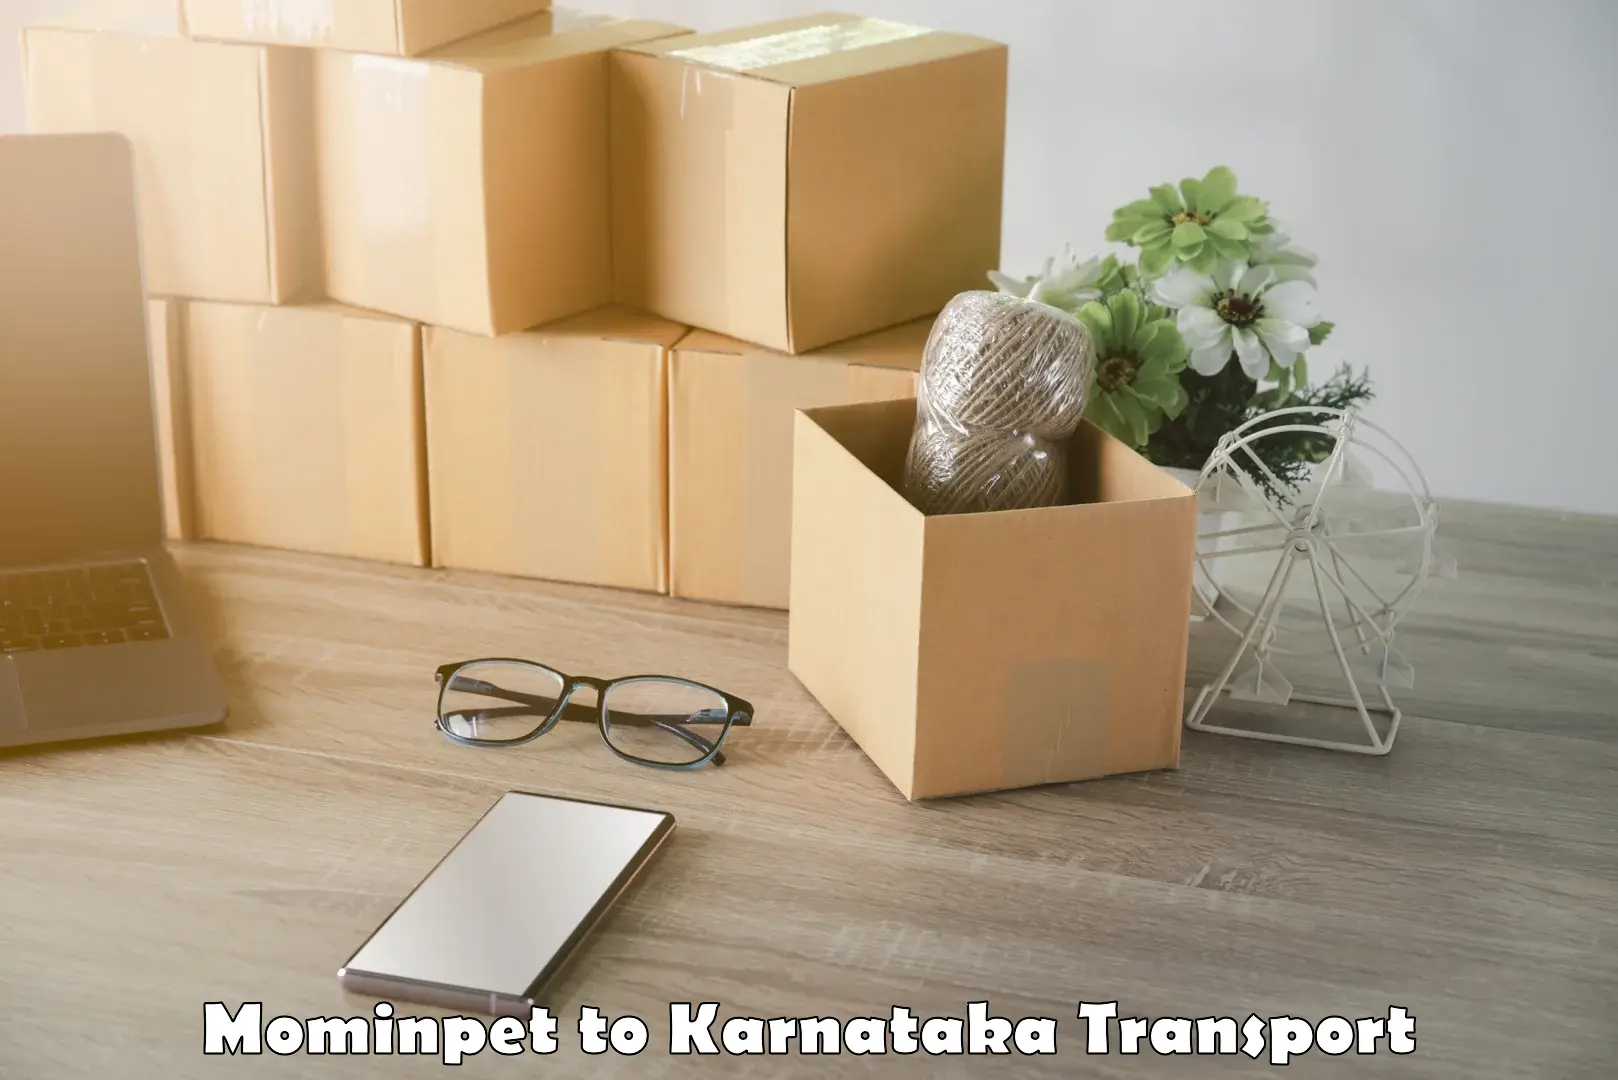 Road transport online services Mominpet to Karnataka